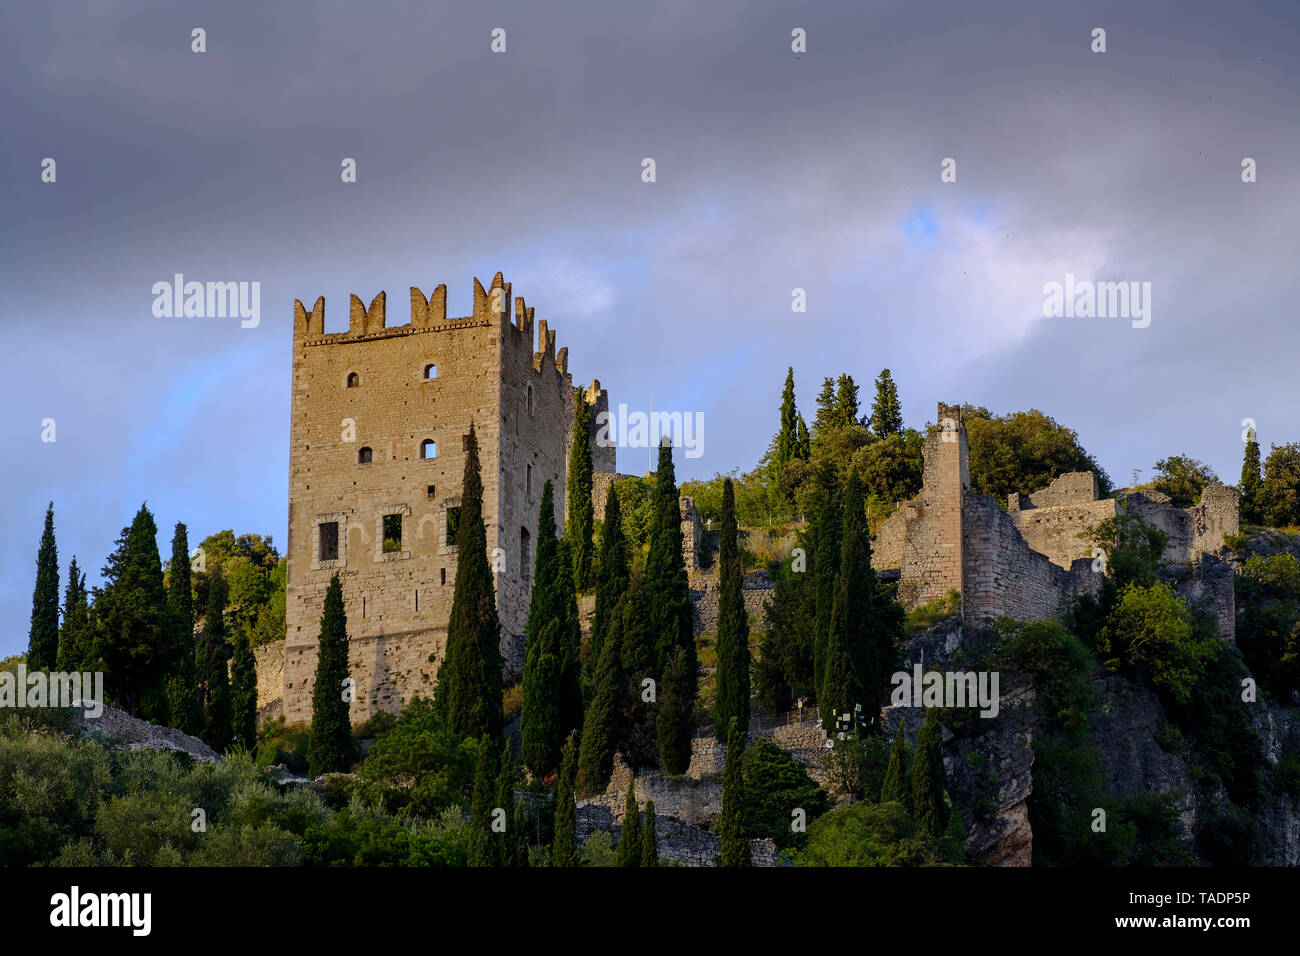 Italy, Trentino, Castello di Arco Stock Photo - Alamy